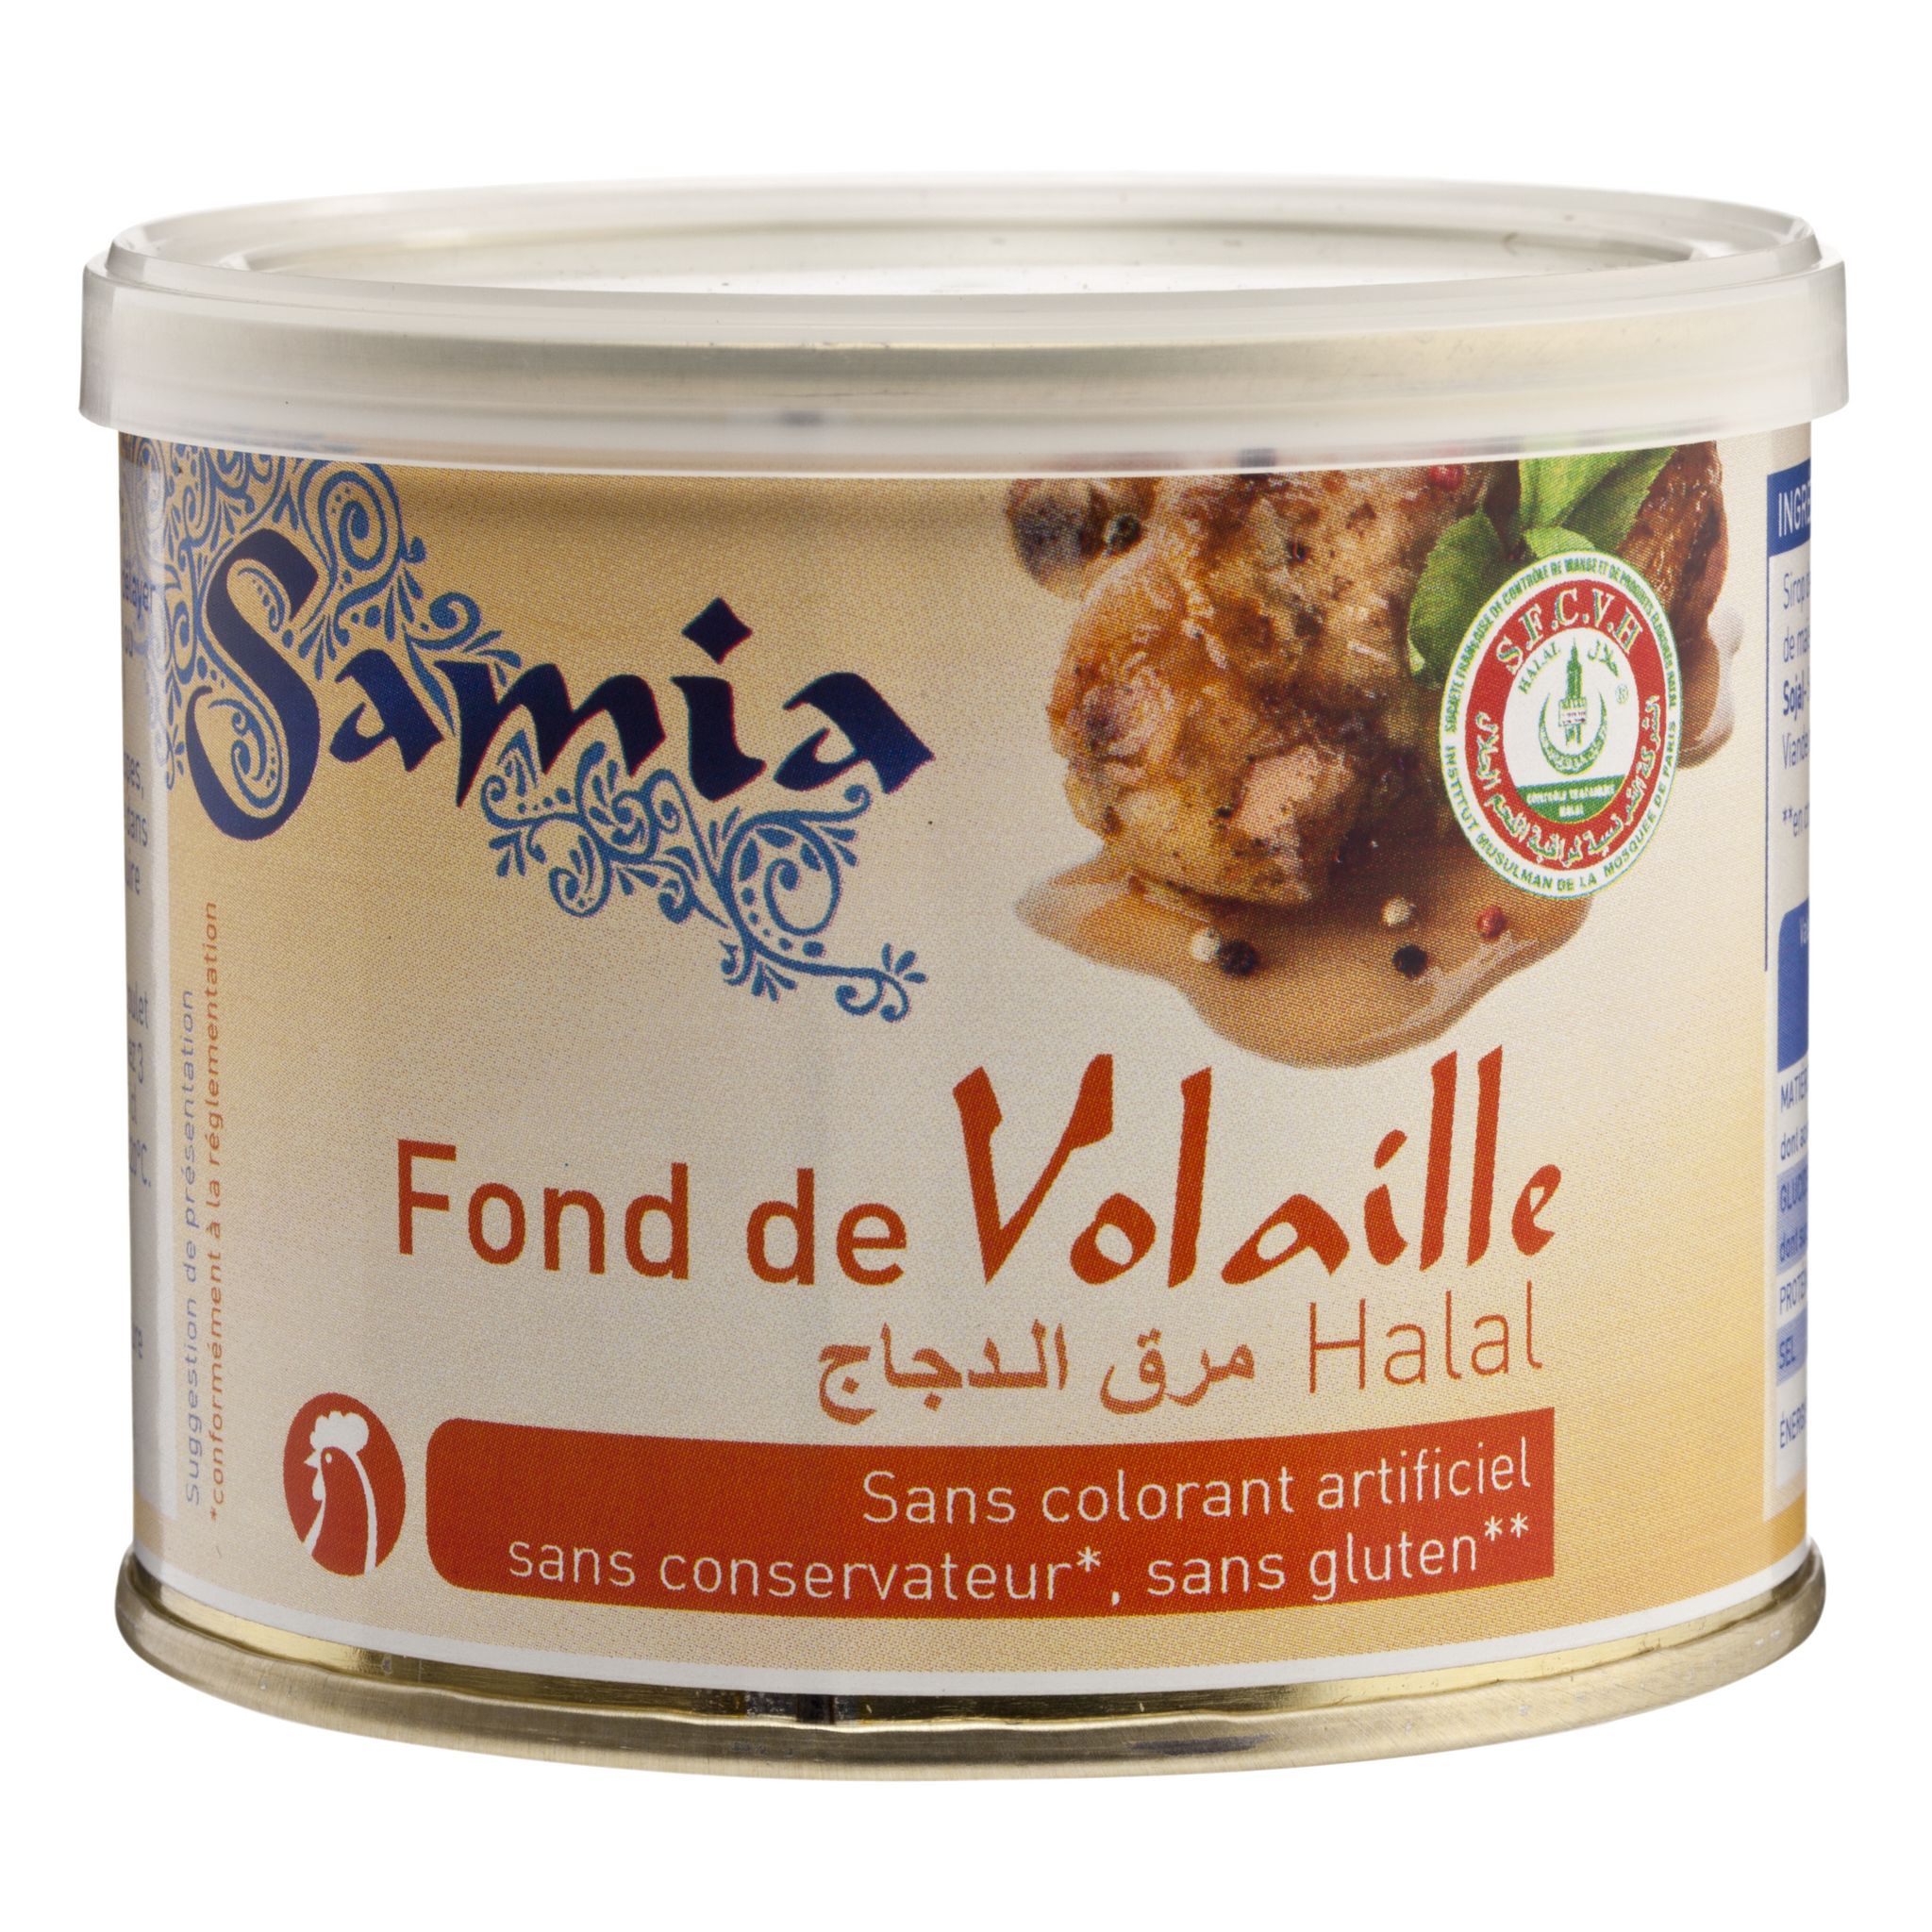 Samia - Fond de volaille – Le comptoir du Nil : produits orientaux en ligne